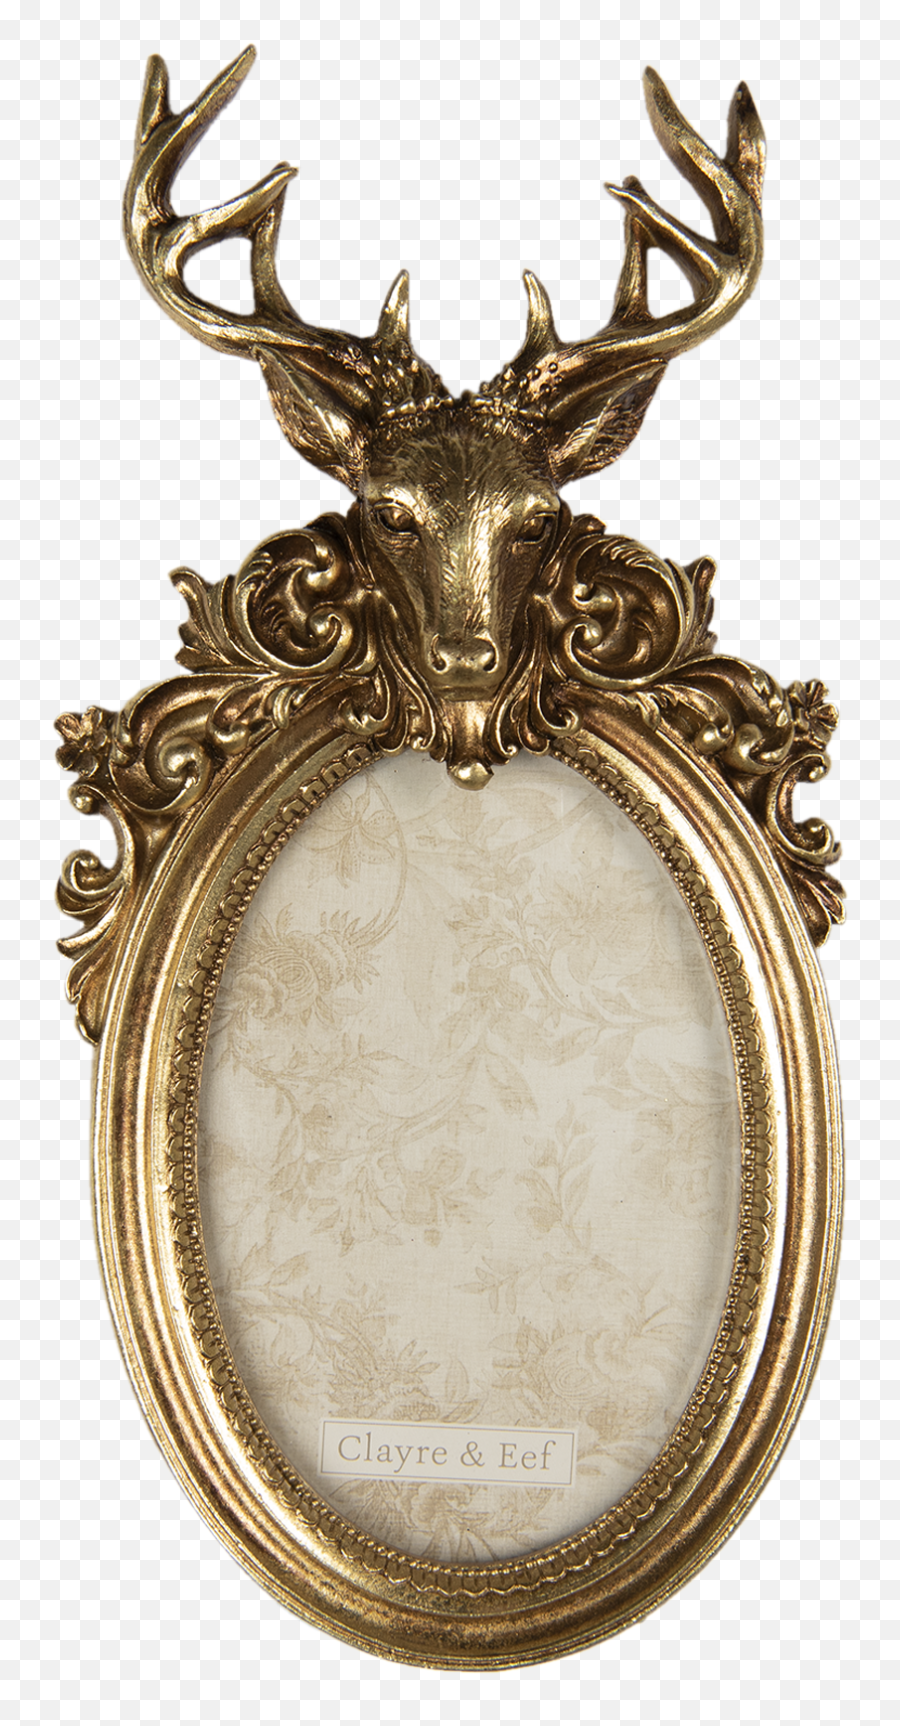 Vintage Style Stag Deer Head Ornate Antique Gold Photo - Oval Picture Frames Ornate Emoji,Deer Head Logo